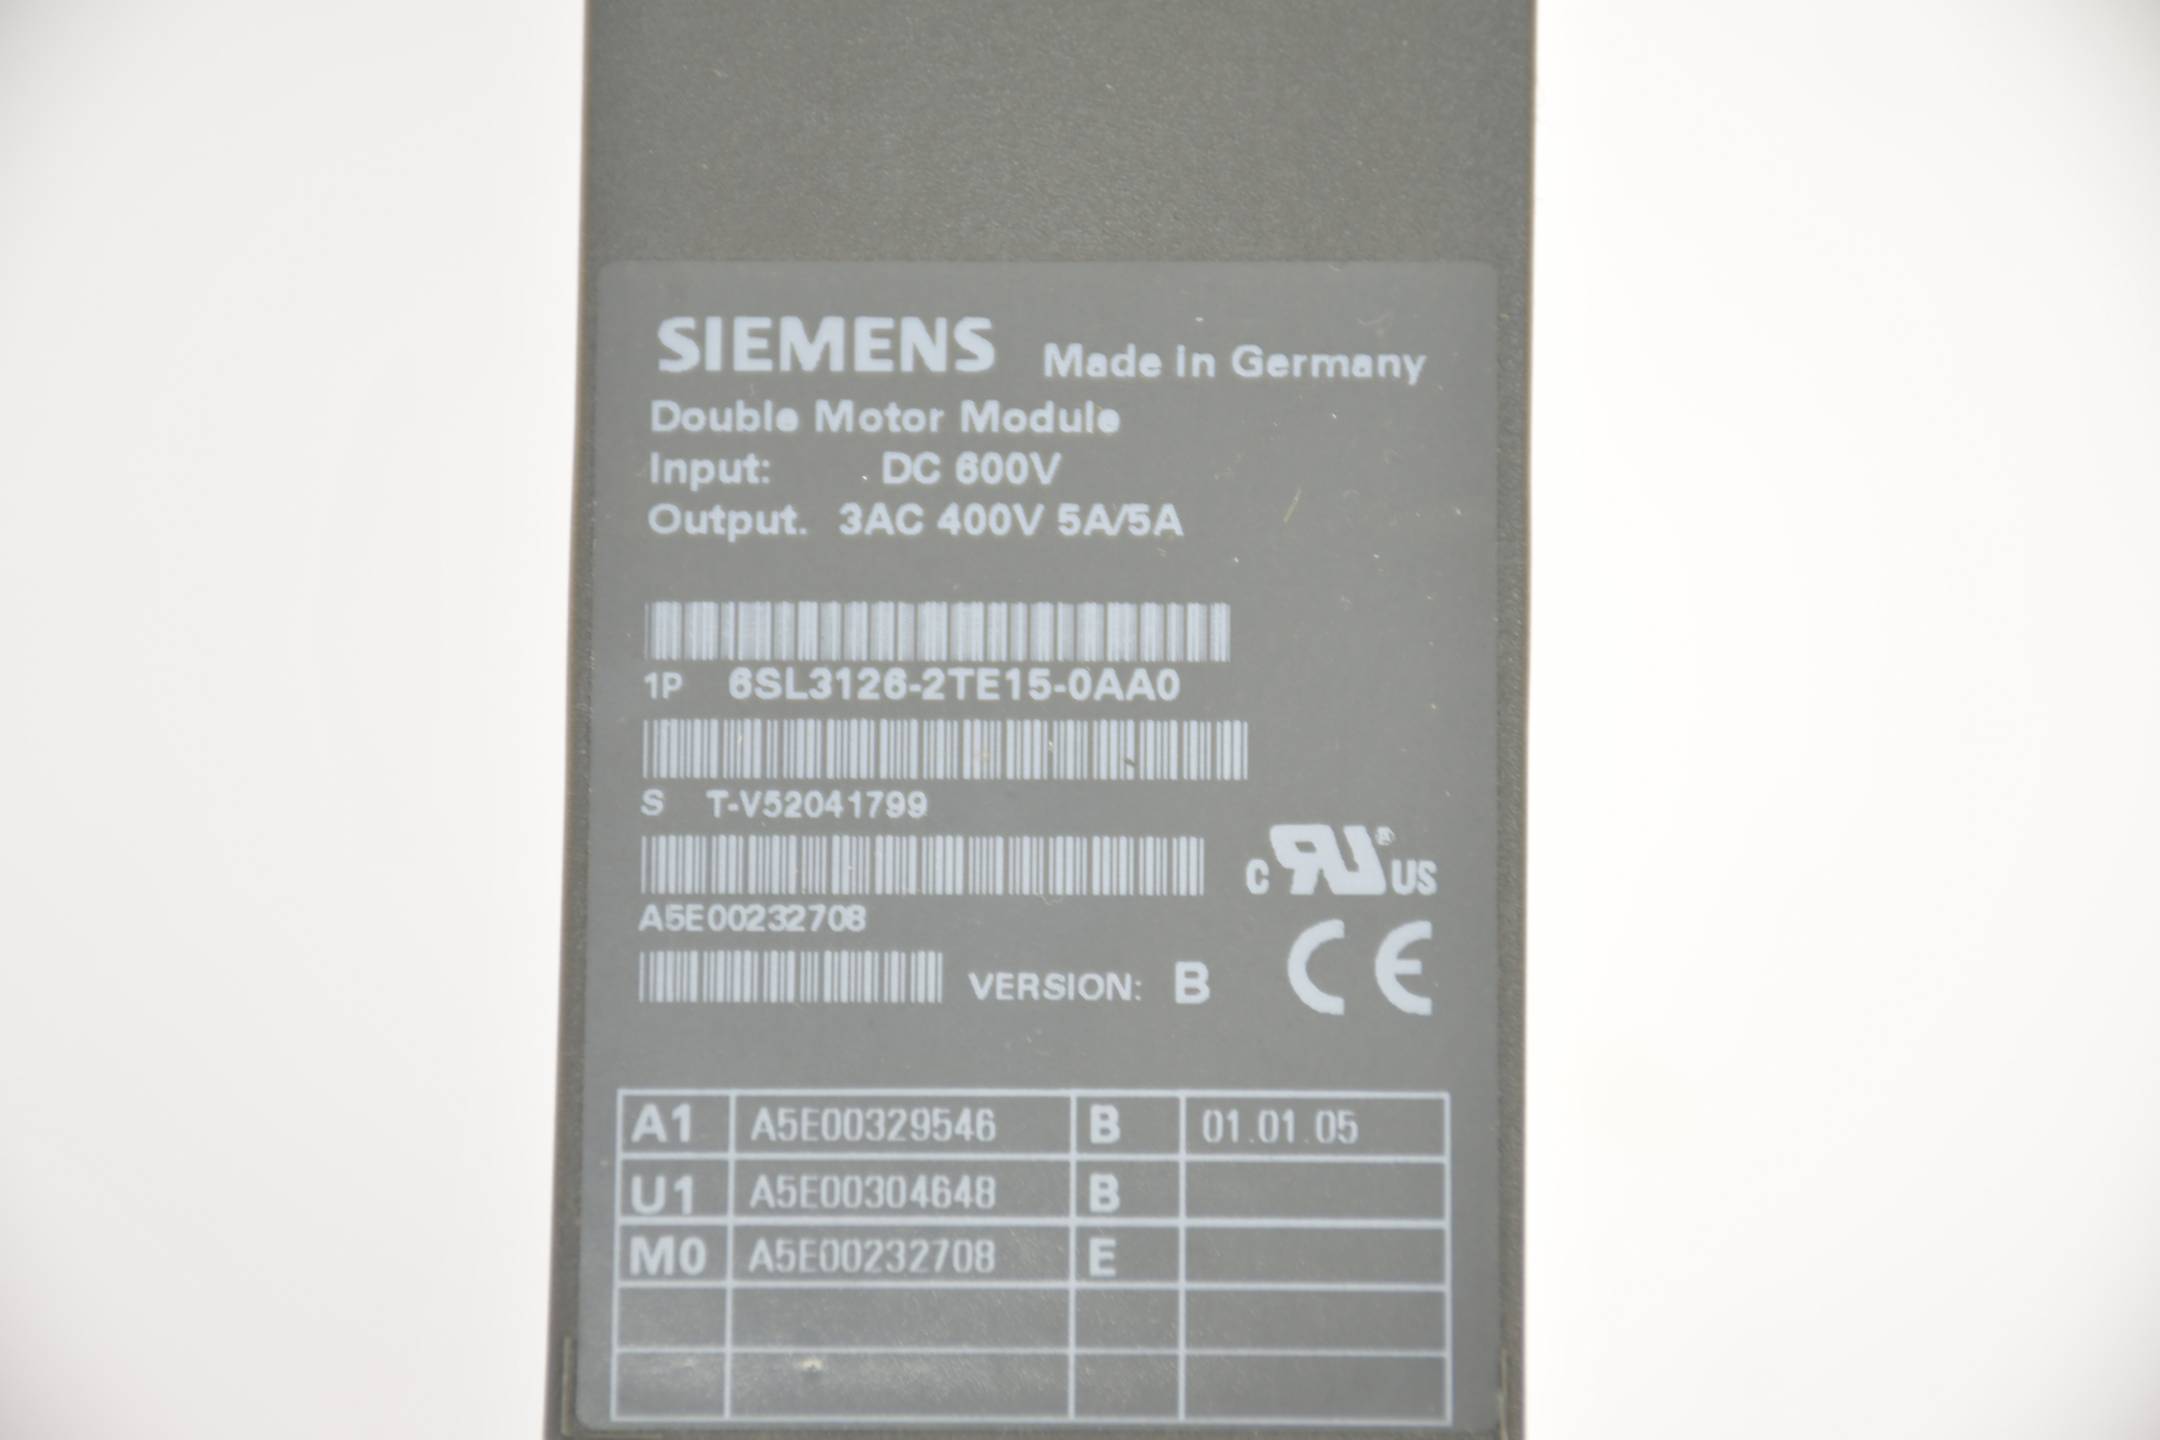 Siemens sinamics motor module 6SL3126-2TE15-0AA0 ( 6SL3 126-2TE15-0AA0 ) Ver B